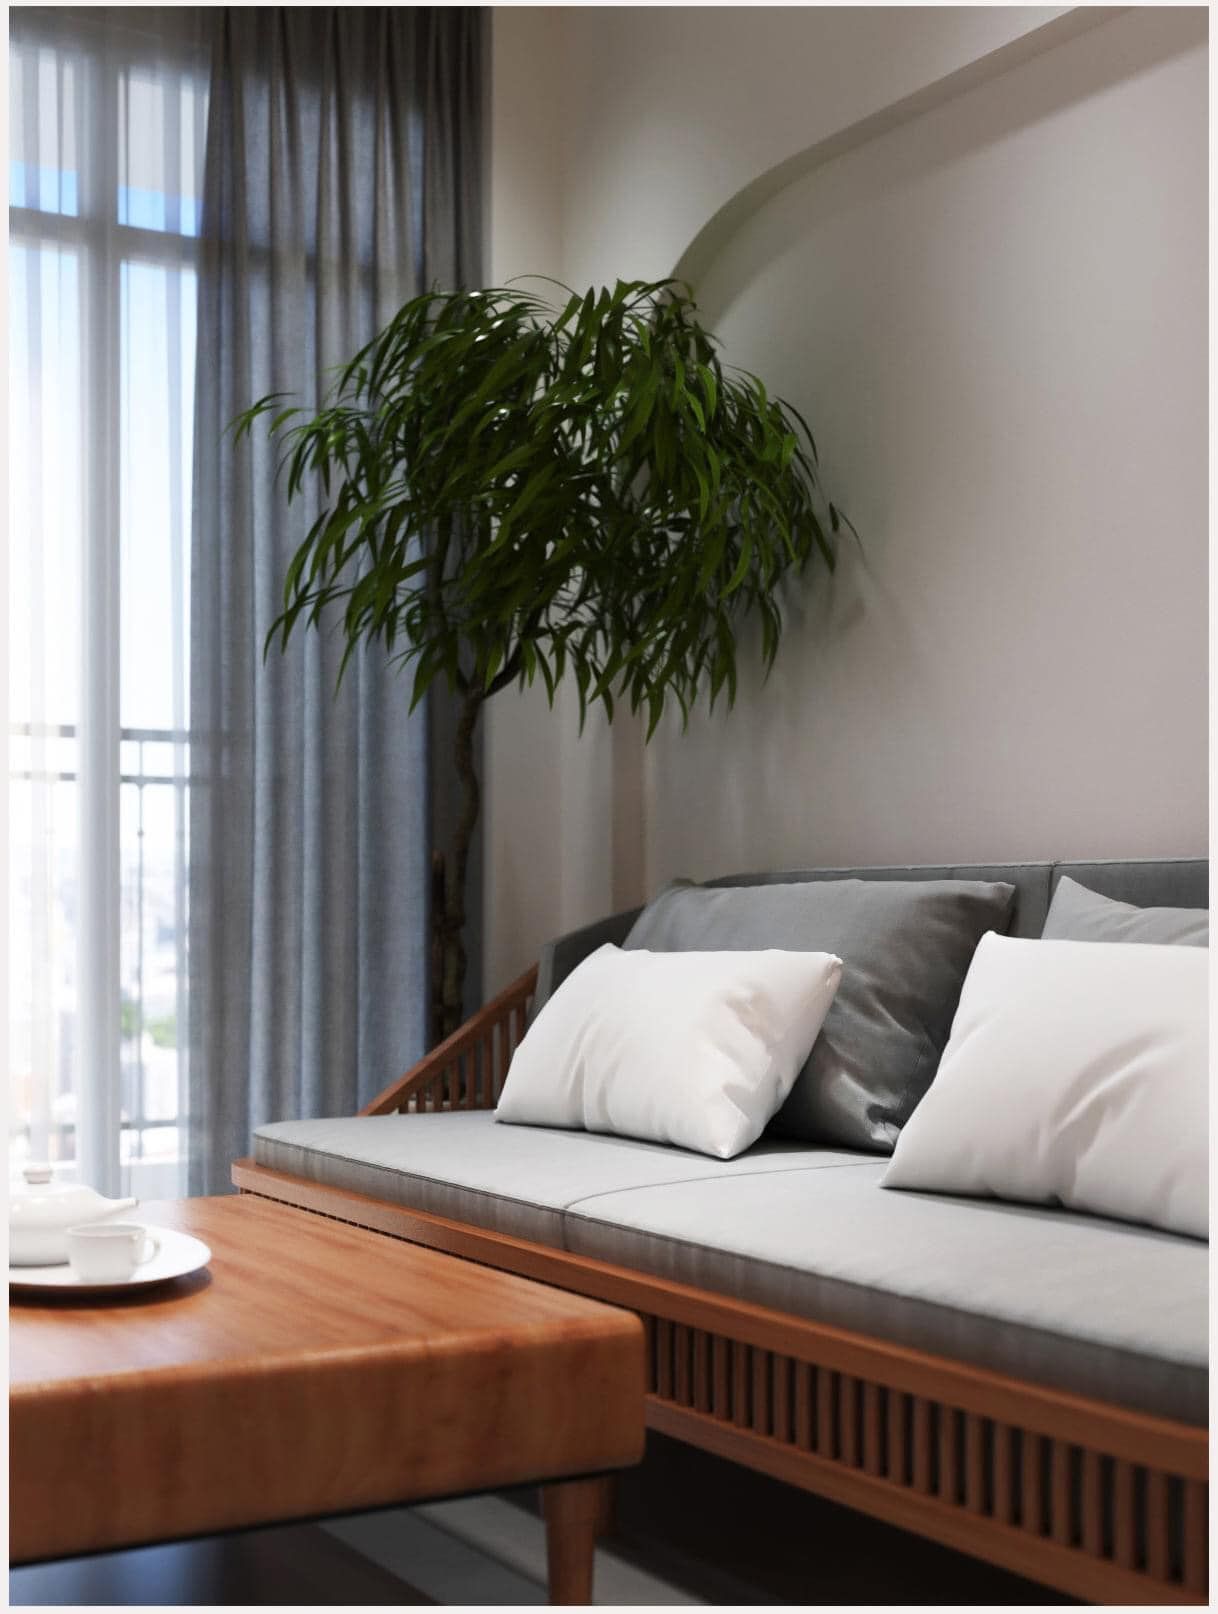 Không gian ngôi nhà được trang trí bởi nhiều chậu cây xanh giúp điều hòa không khí cực kỳ hiệu quả